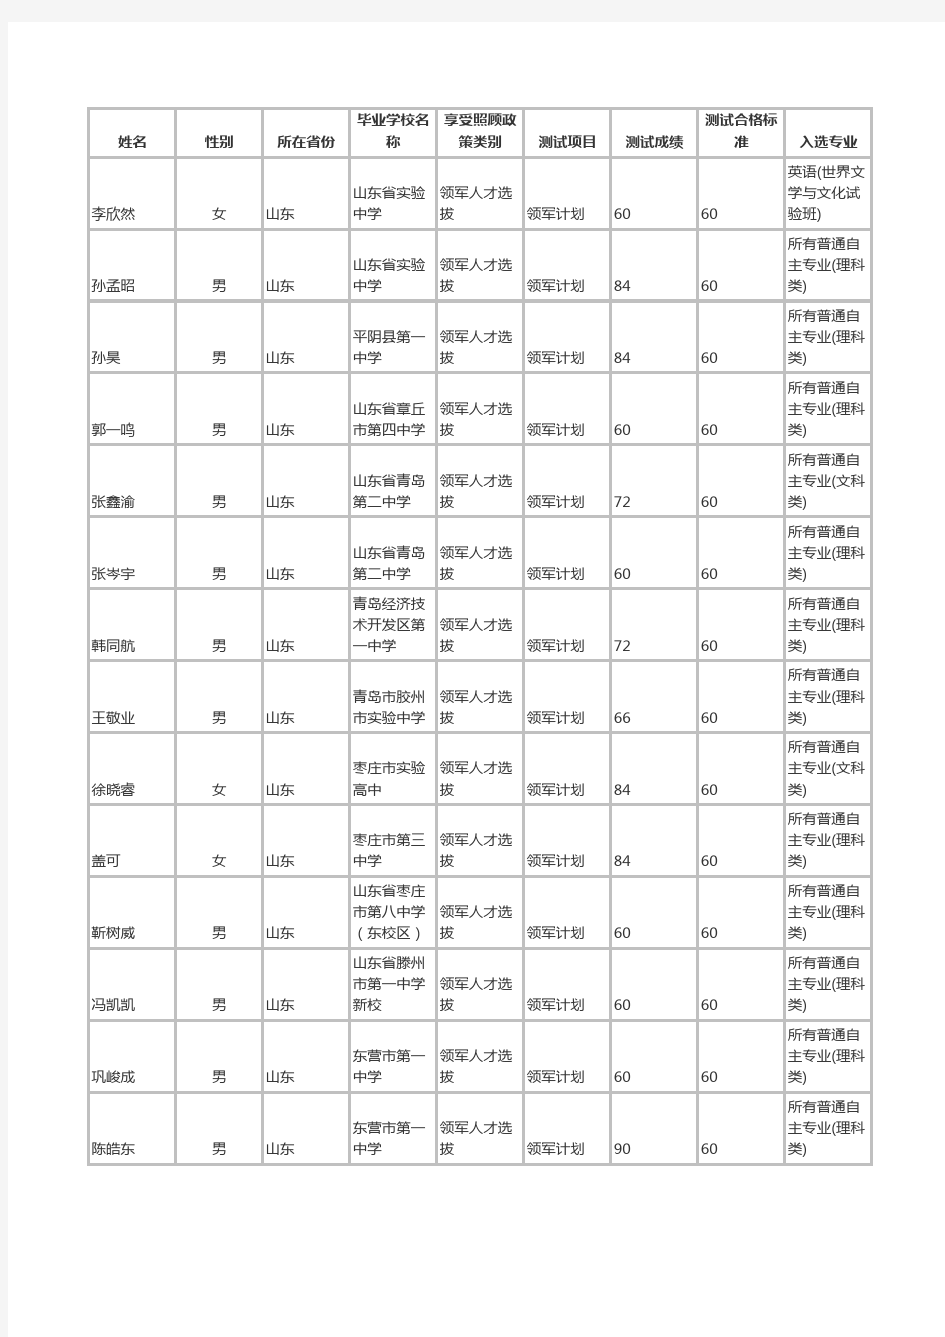 2016年清华大学综合评价名单(山东)